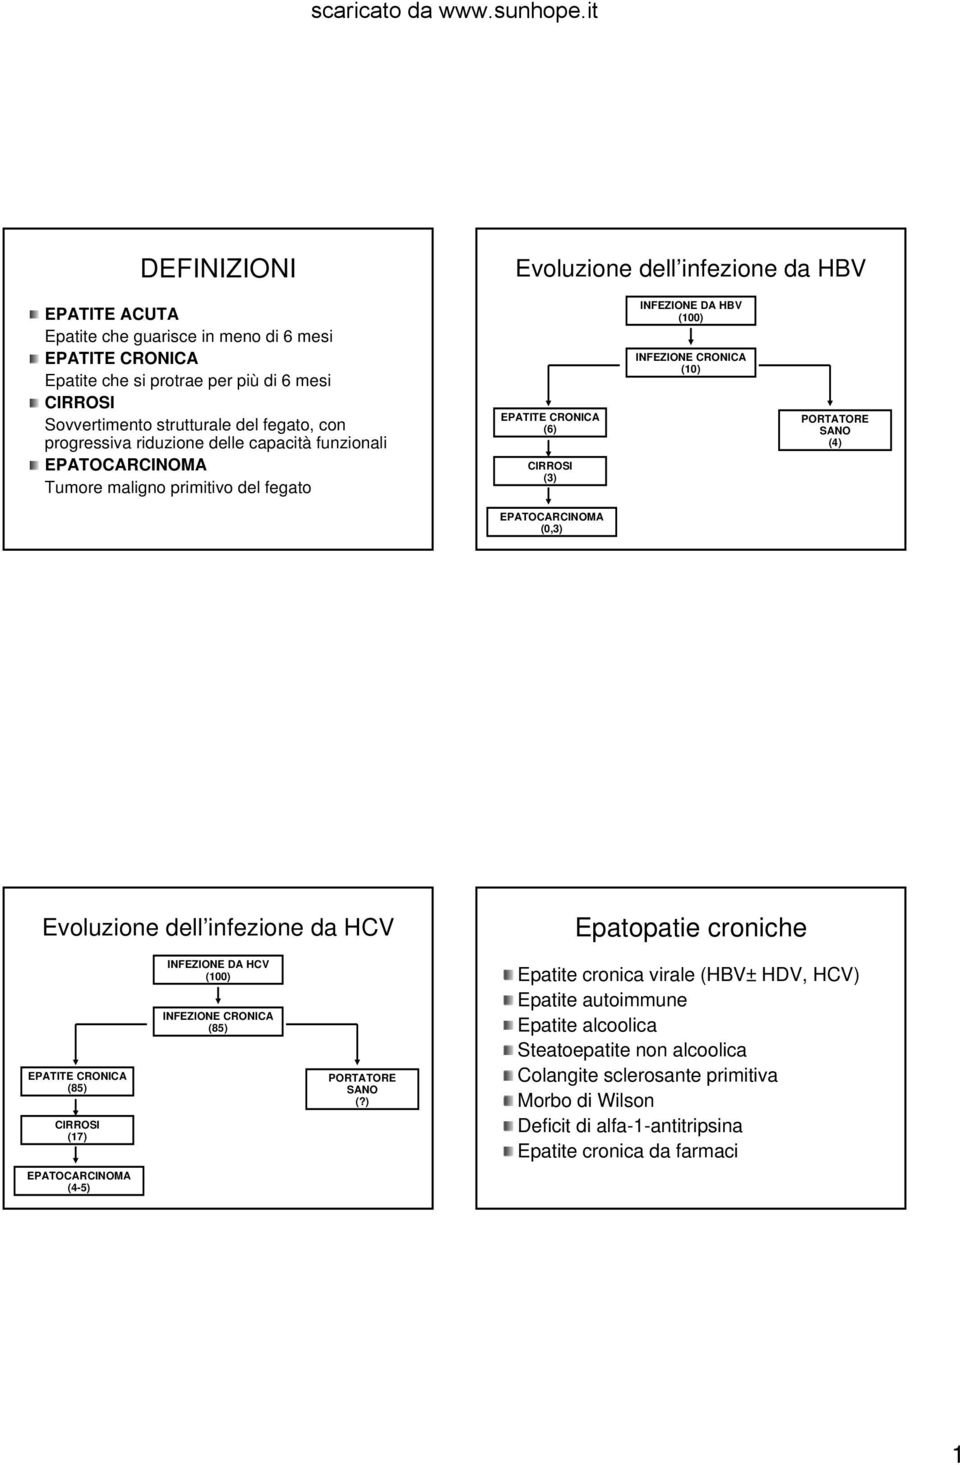 SANO (4) EPATOCARCINOMA (0,3) Evoluzione dell infezione da HCV Epatopatie croniche EPATITE CRONICA (85) CIRROSI (17) INFEZIONE DA HCV (100) INFEZIONE CRONICA (85) PORTATORE SANO (?